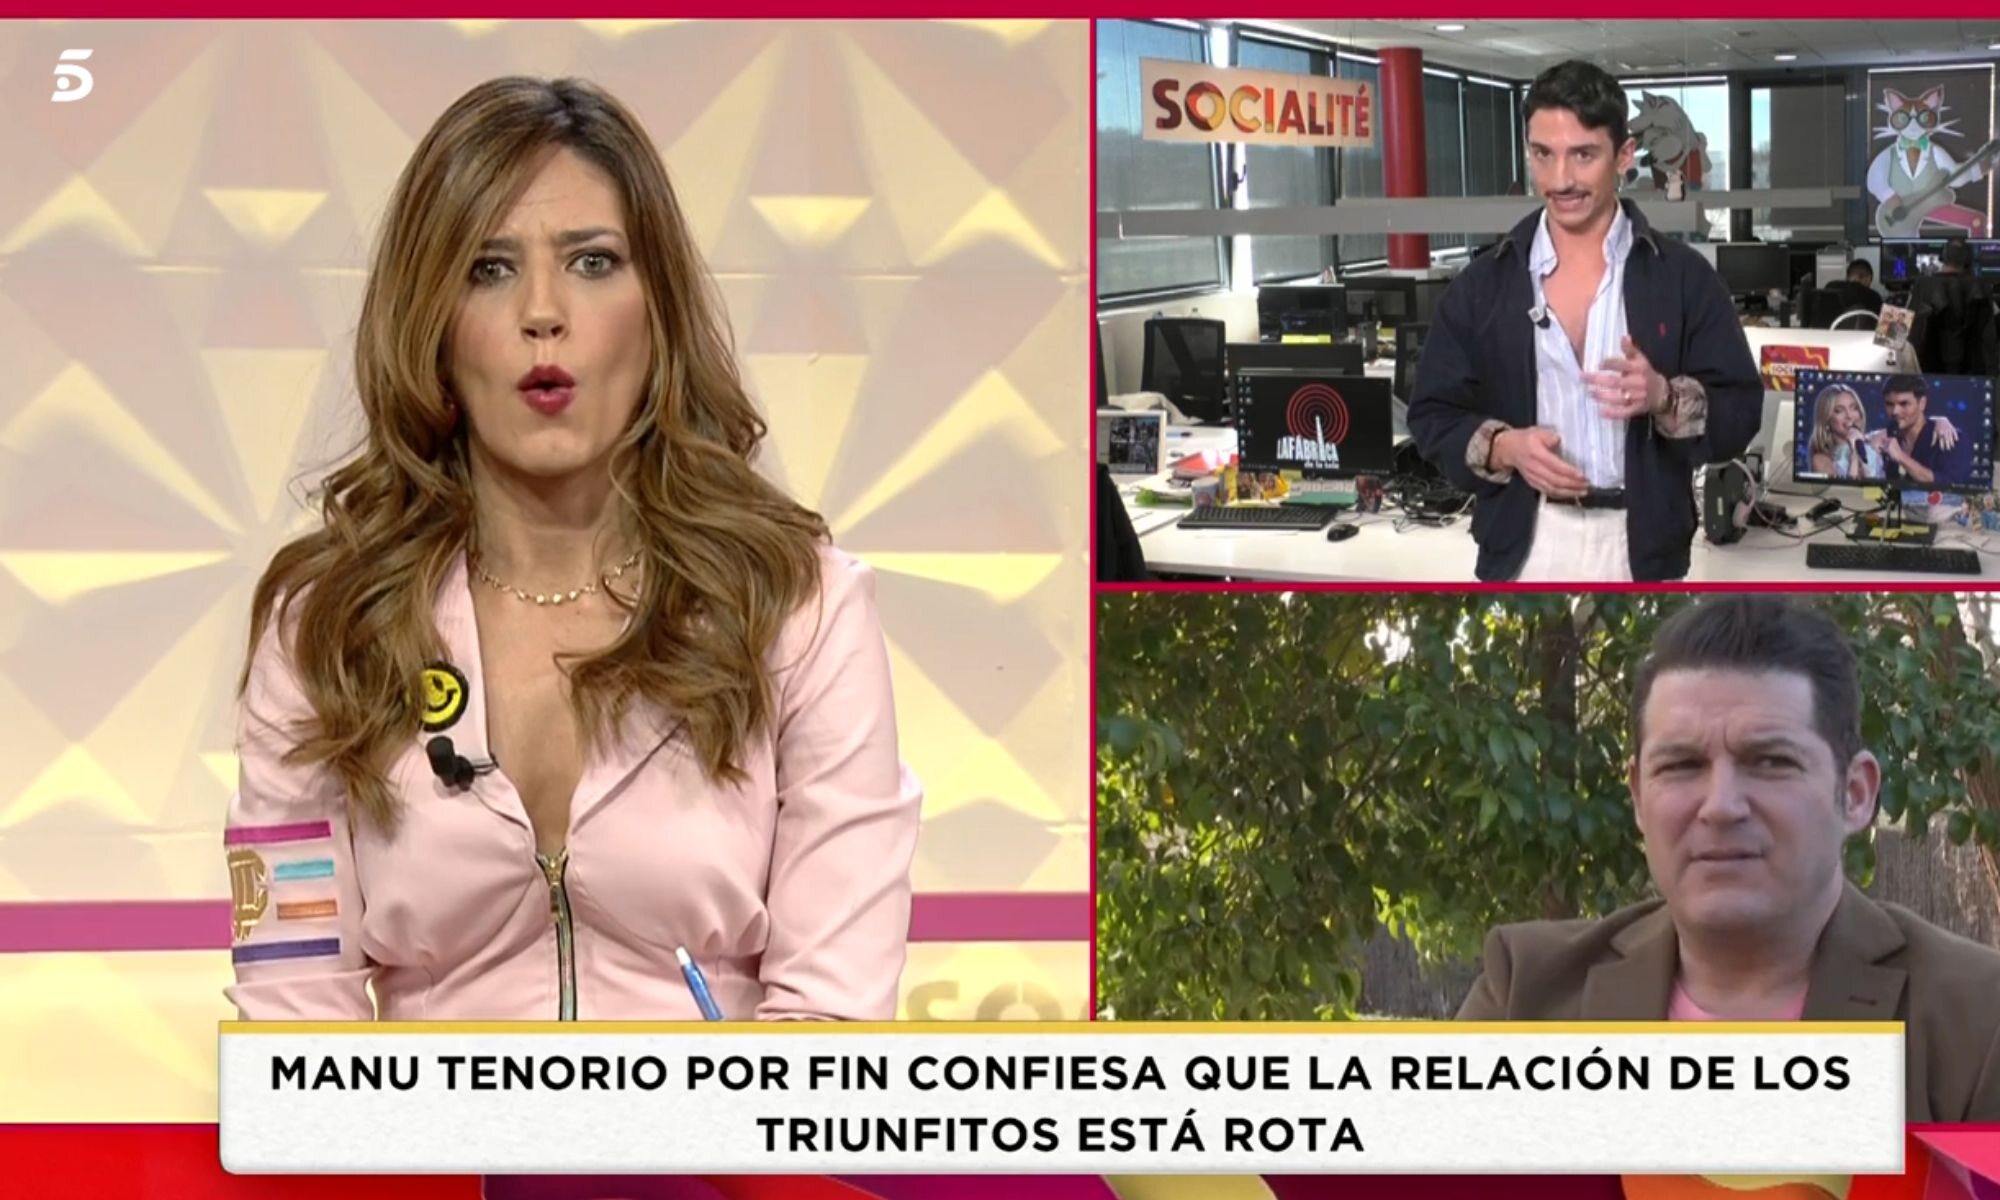 Nuria Marín hablando de Manu Tenorio en 'Socialité'